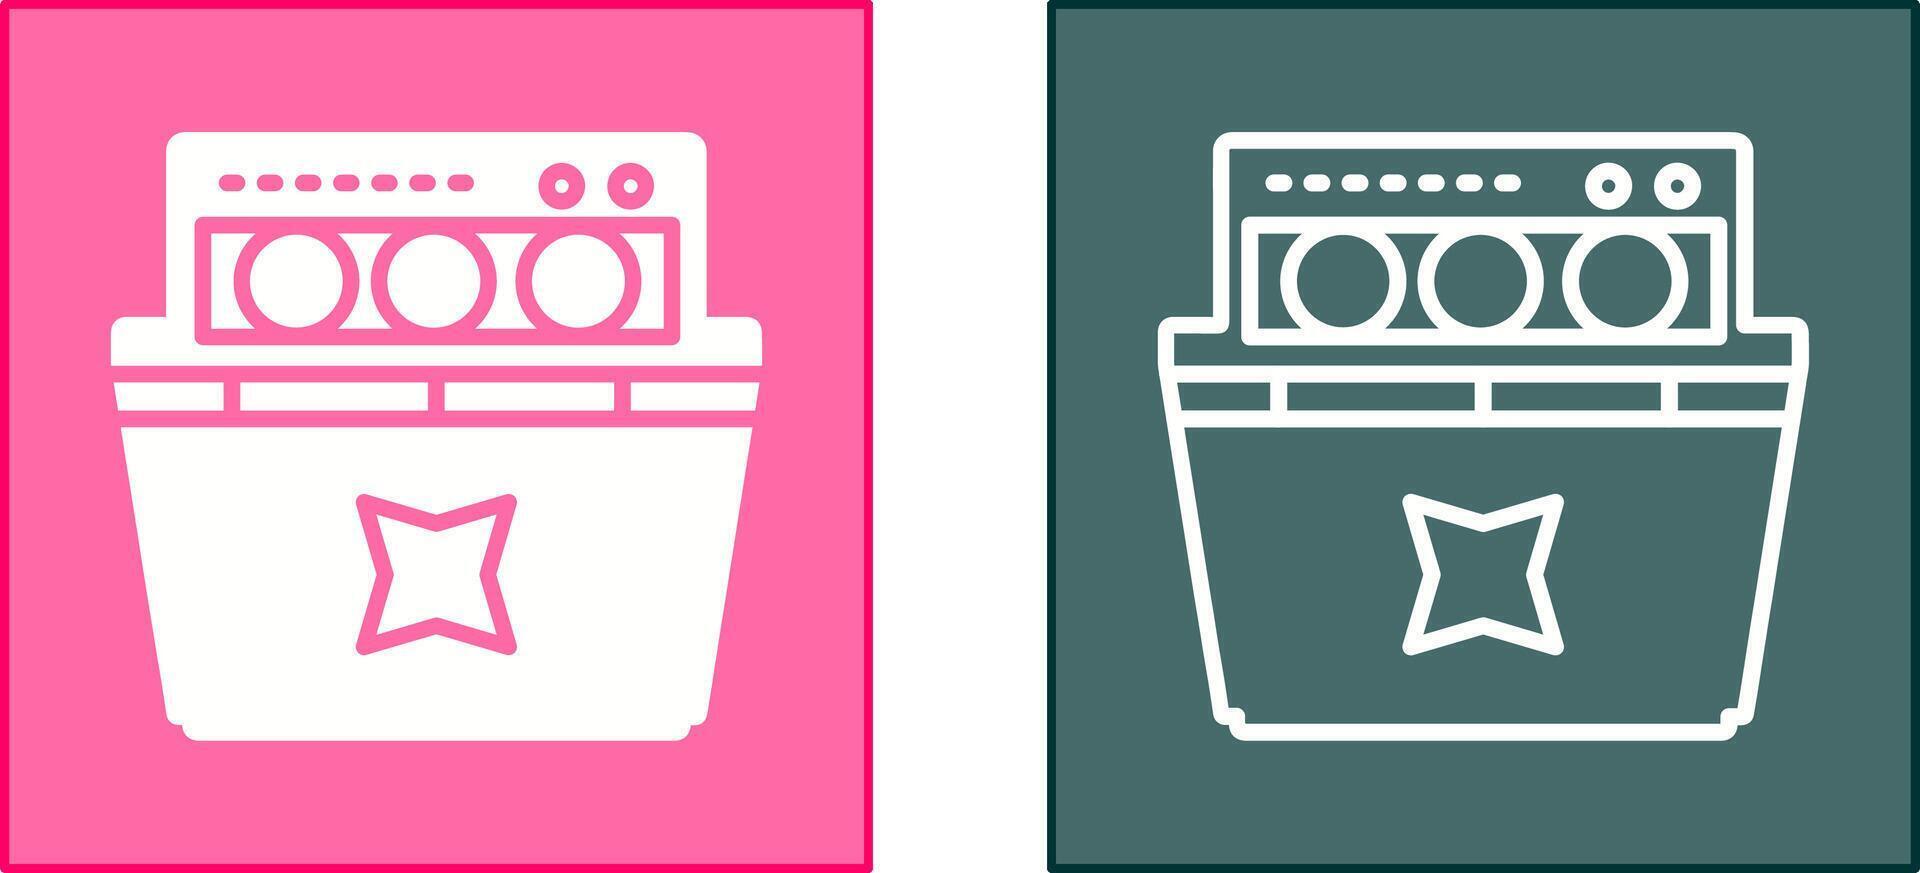 lavastoviglie icona design vettore